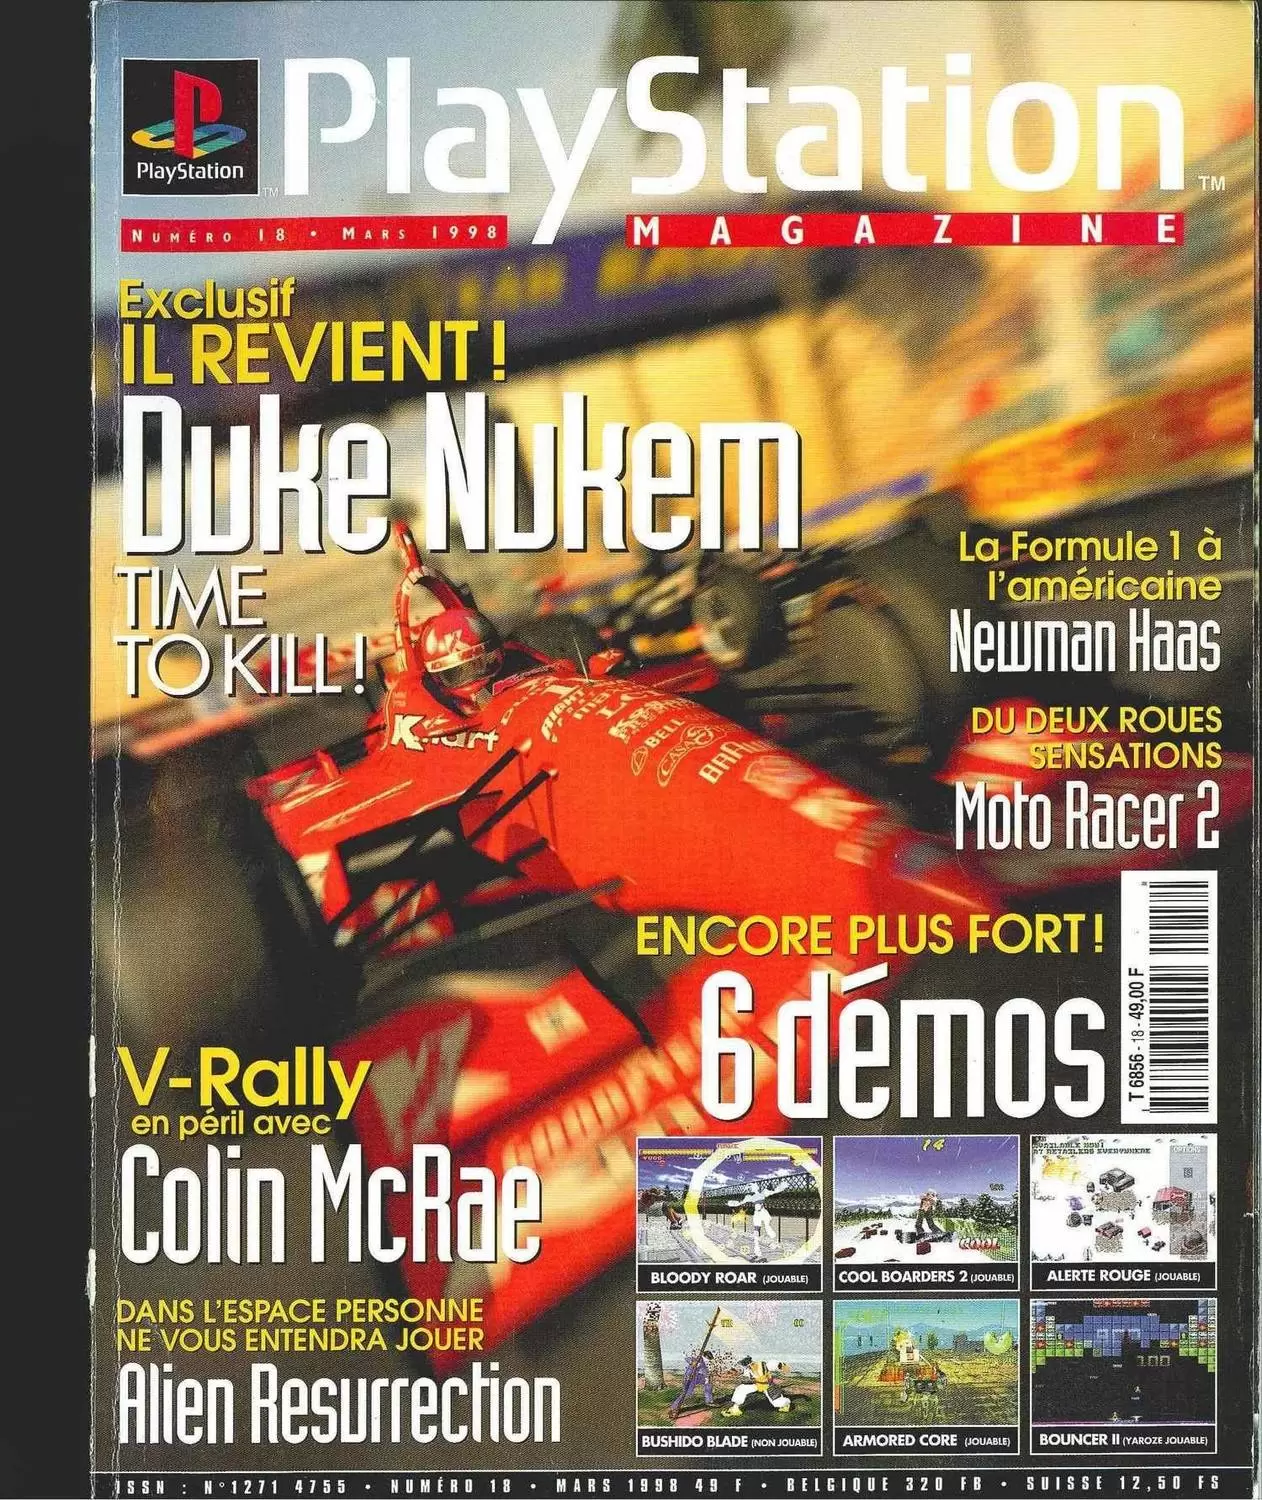 Playstation Magazine - Playstation Magazine #18